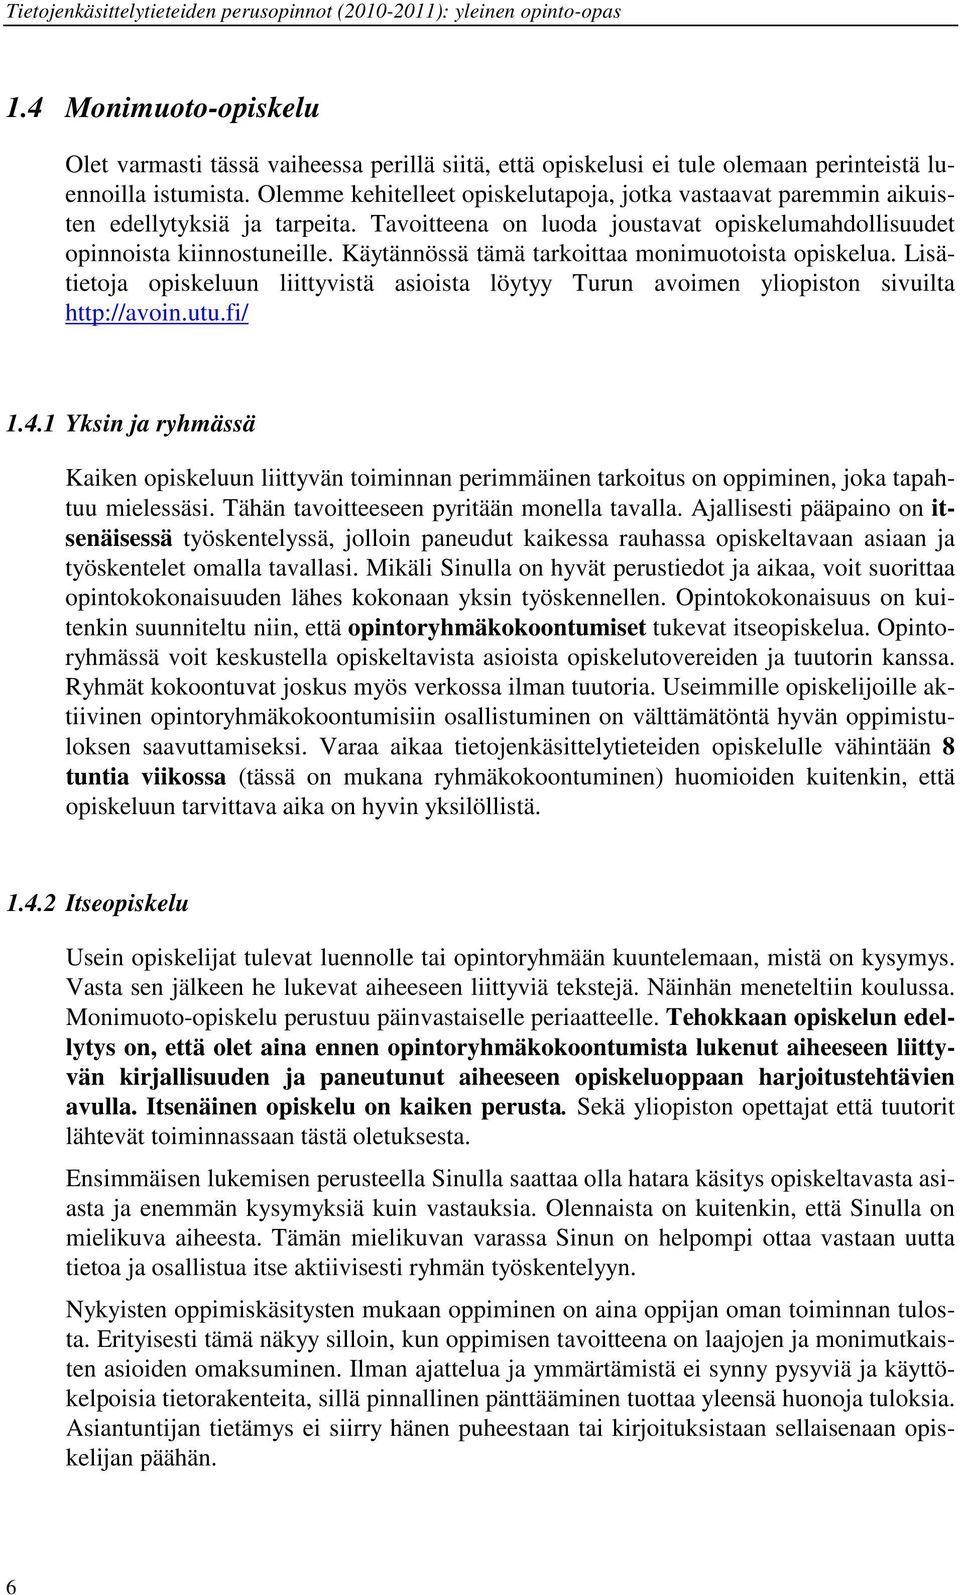 Käytännössä tämä tarkoittaa monimuotoista opiskelua. Lisätietoja opiskeluun liittyvistä asioista löytyy Turun avoimen yliopiston sivuilta http://avoin.utu.fi/ 1.4.